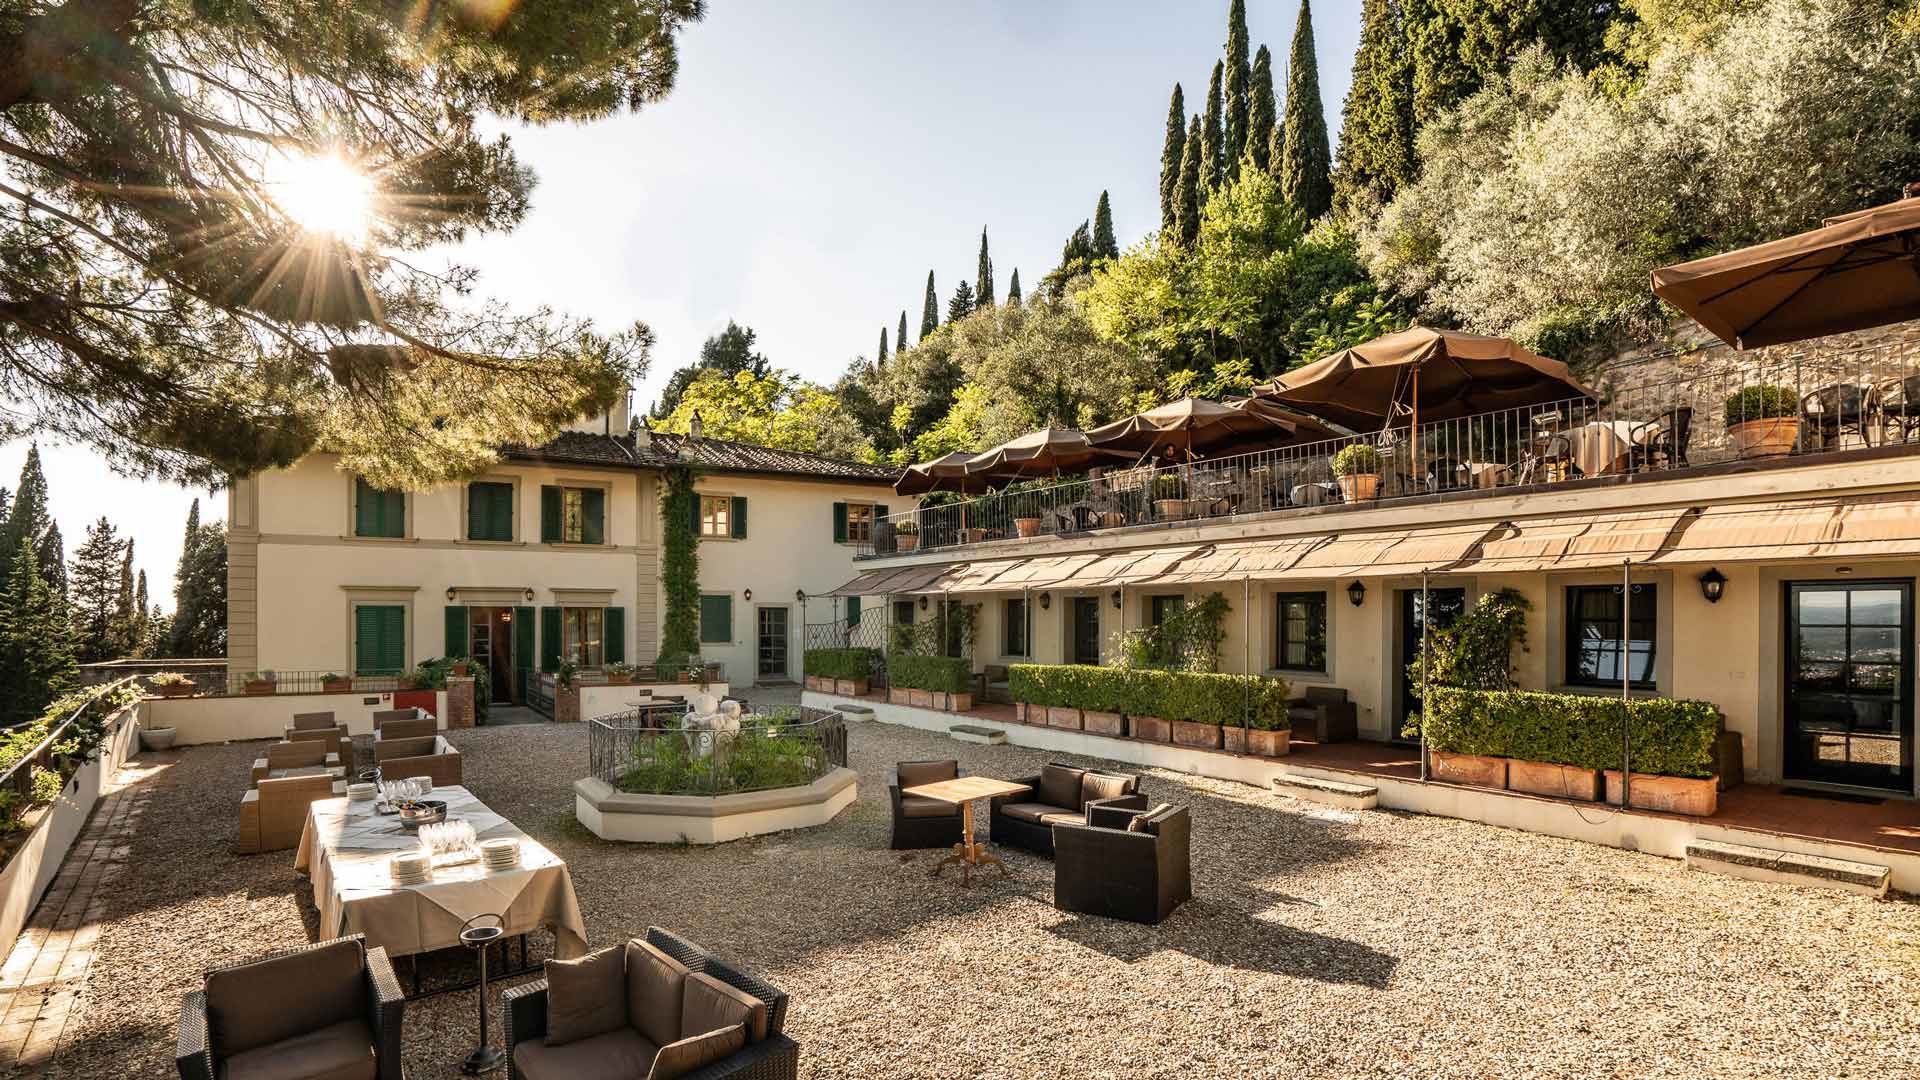 Hotel Villa Fiesole en Toscana | Sitio Oficial (fhhotelgroup.it)